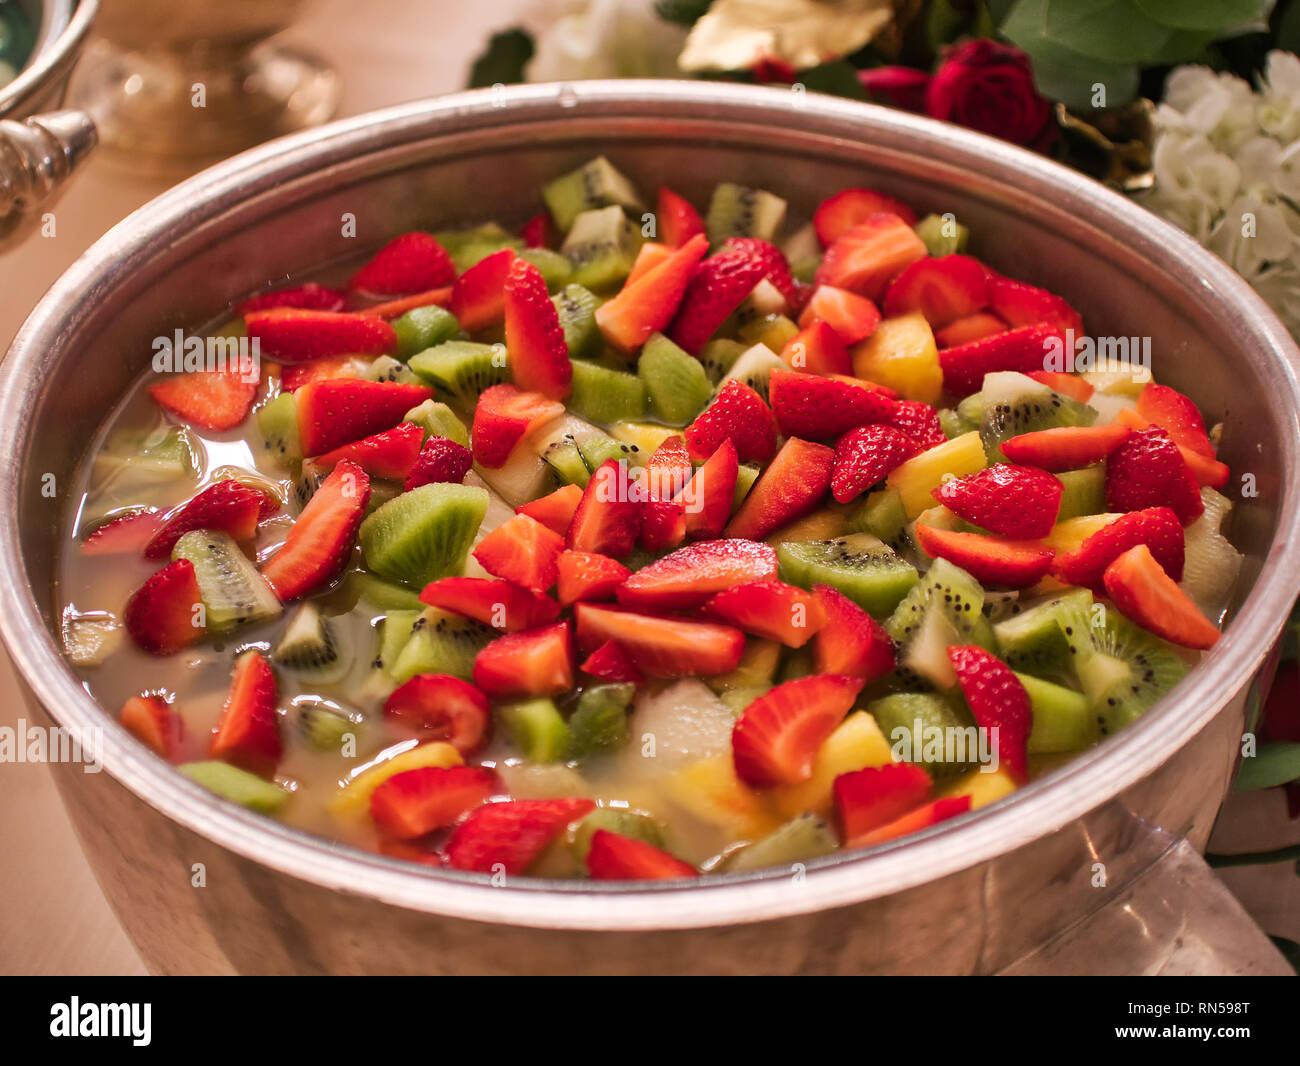 delicious macedonia fruits bowl strawberries kiwis Stock Photo